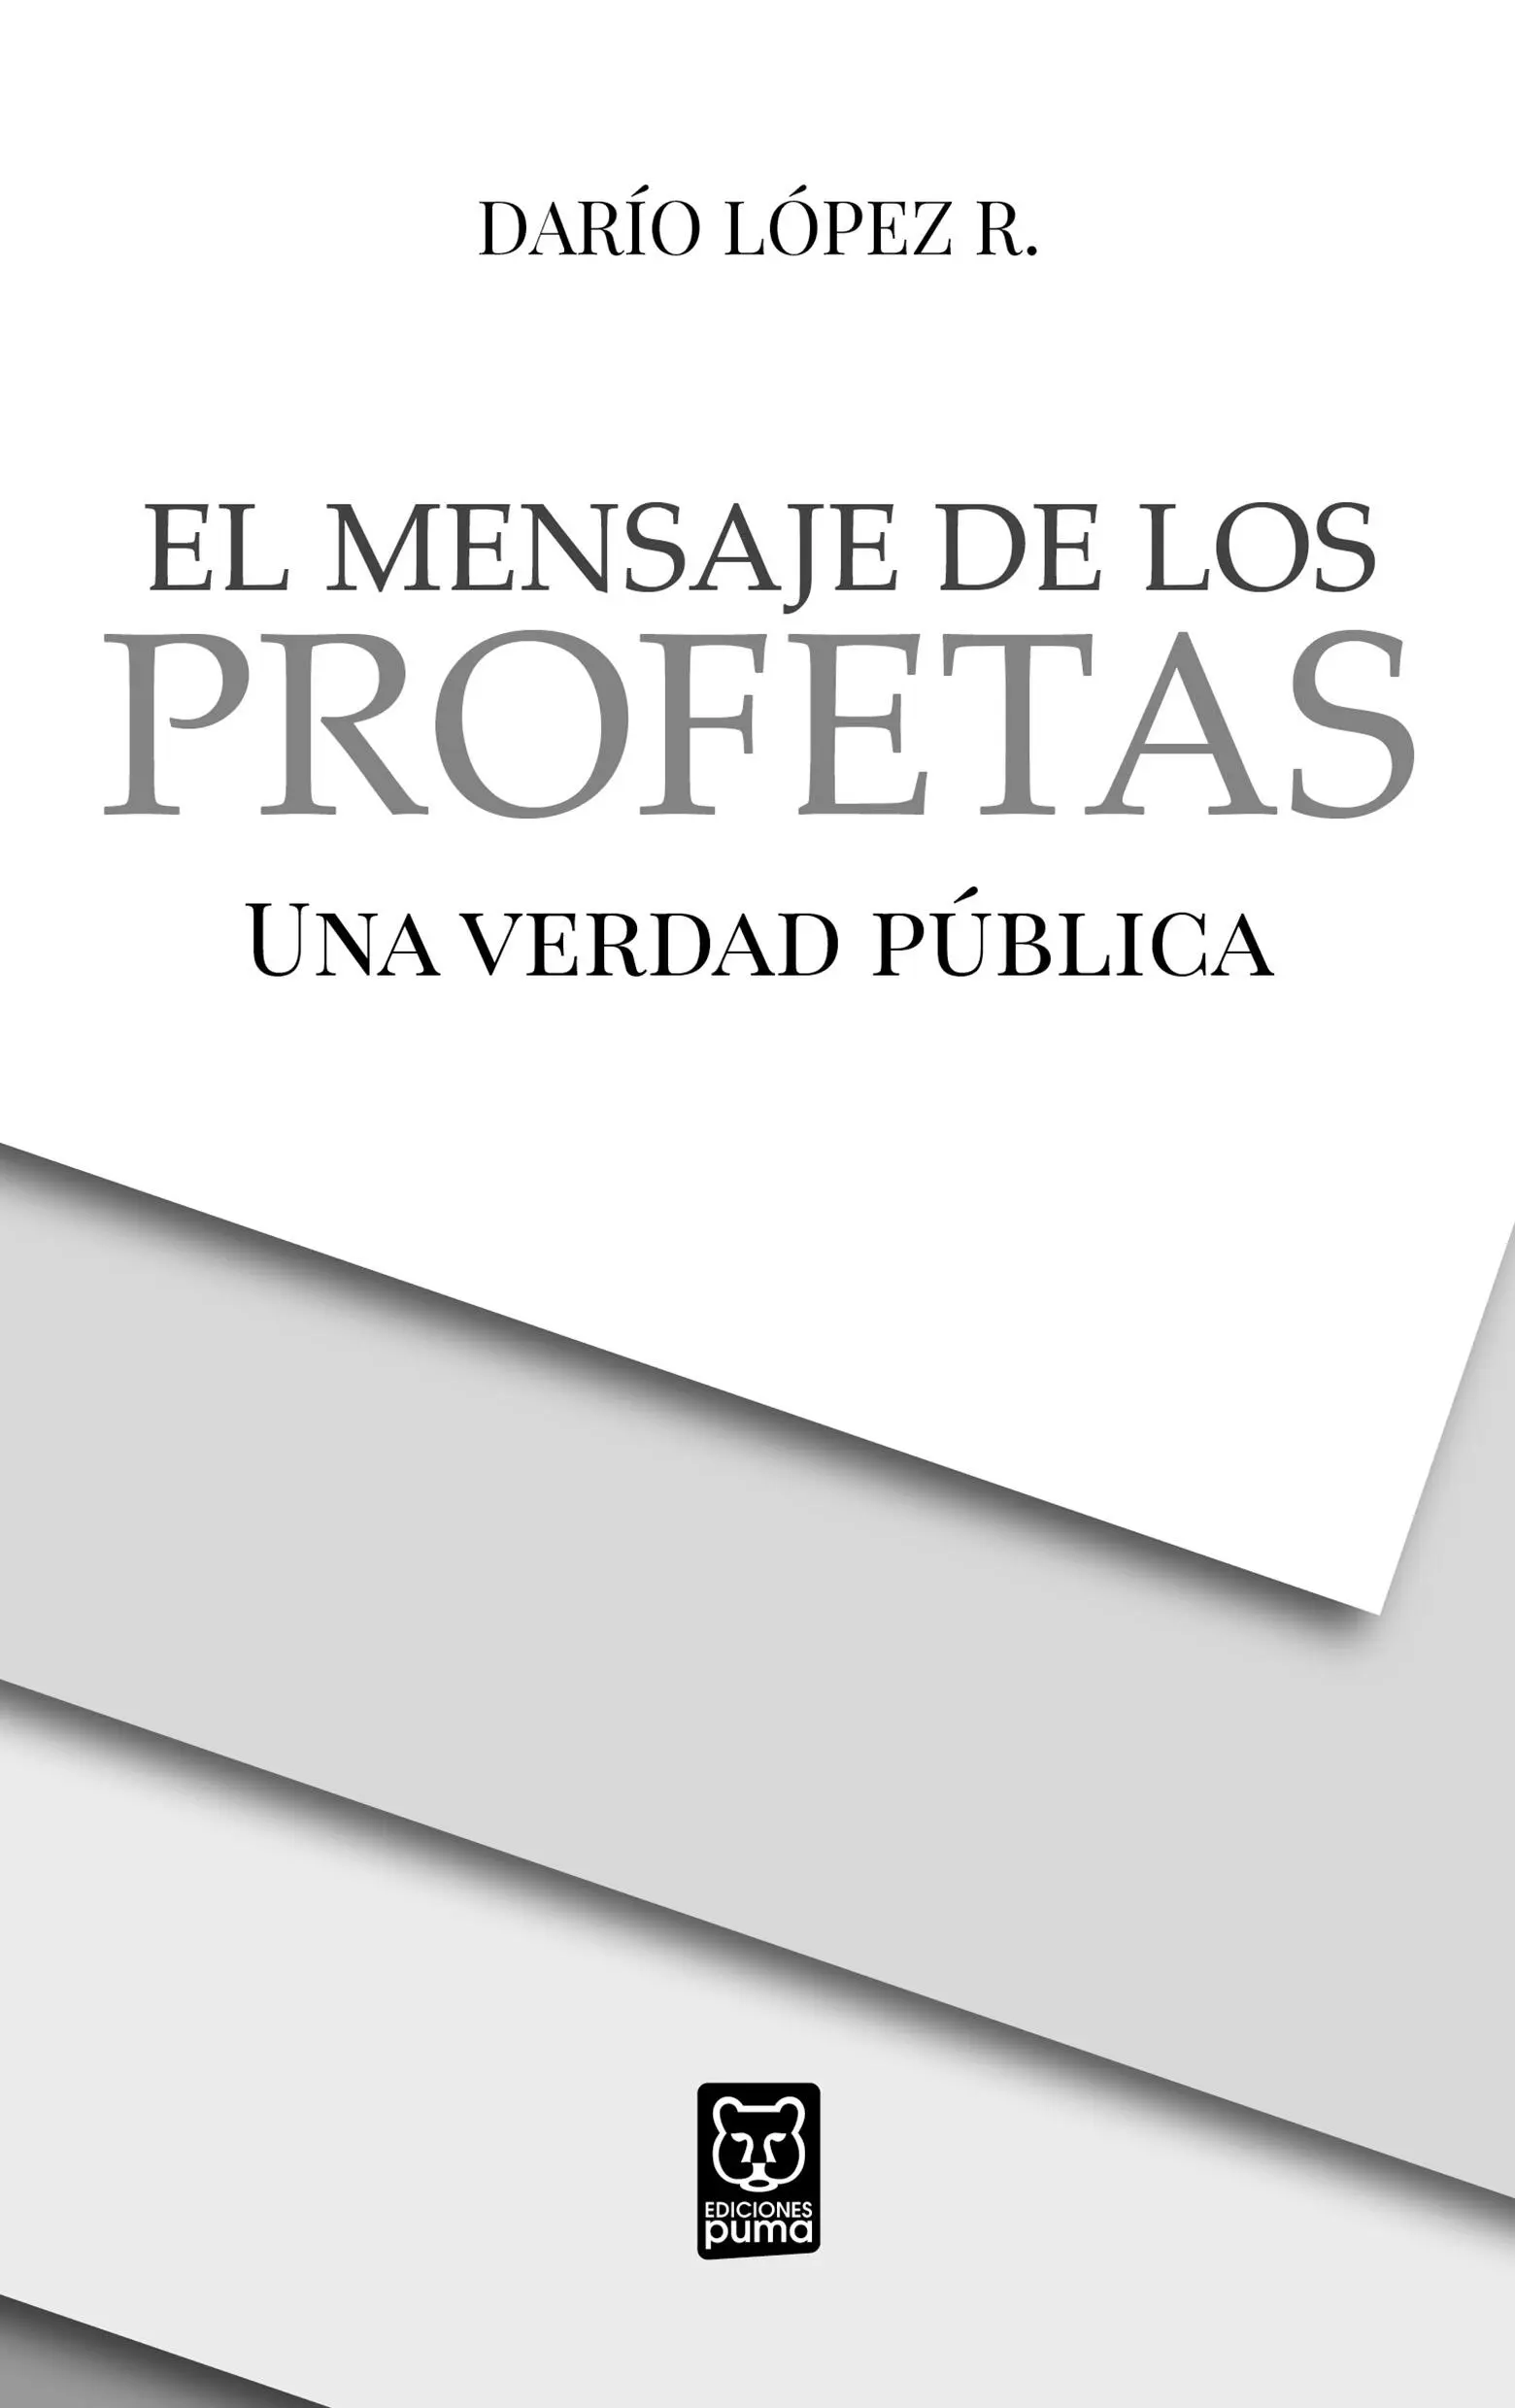 El mensaje de los profetas Una verdad pública 2020 Darío López Rodríguez - фото 2